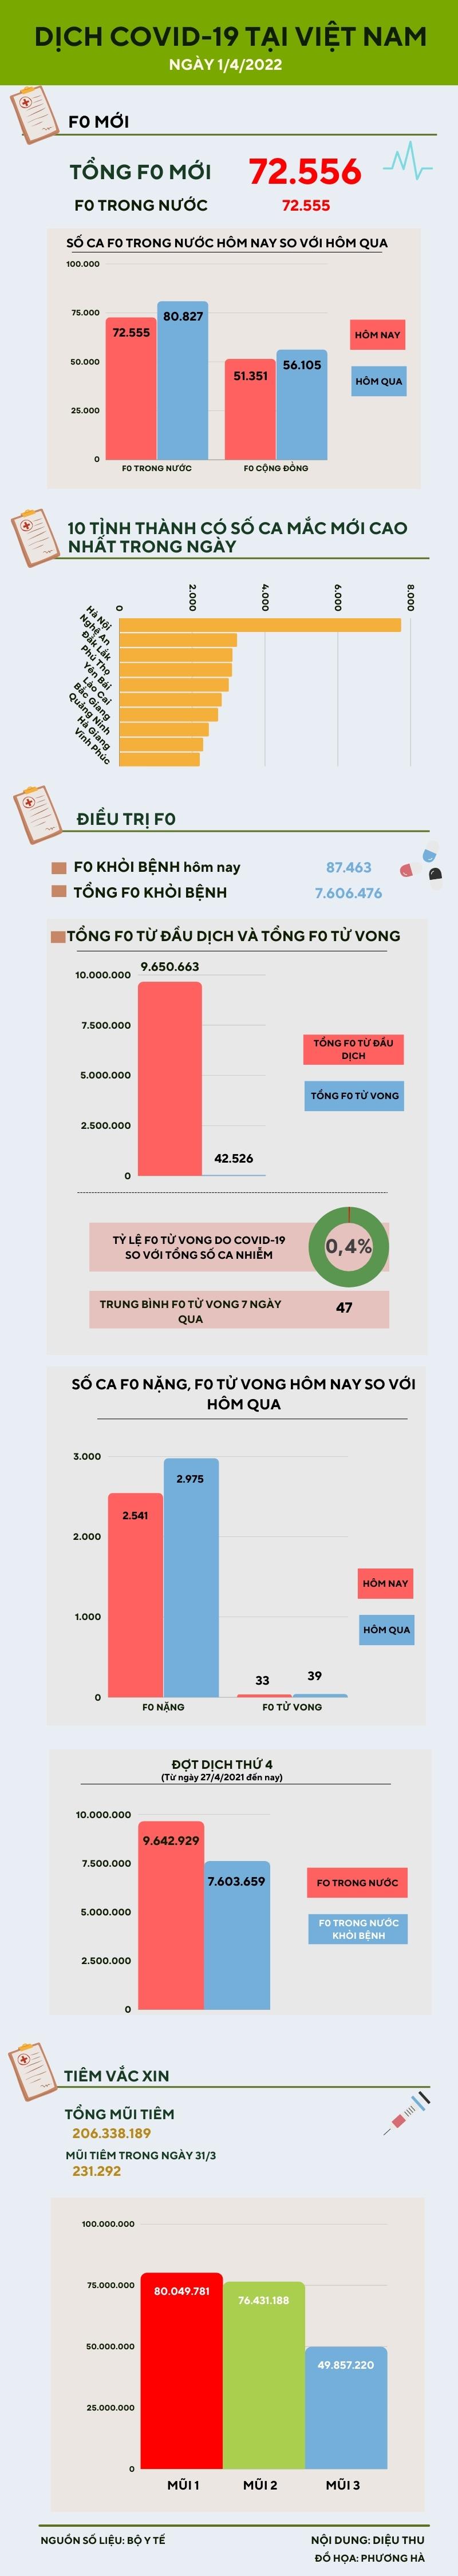 Ngày 1/4: Ghi nhận 72.555 ca COVID-19 trong nước, Hà Nội có 7.734 ca - 1